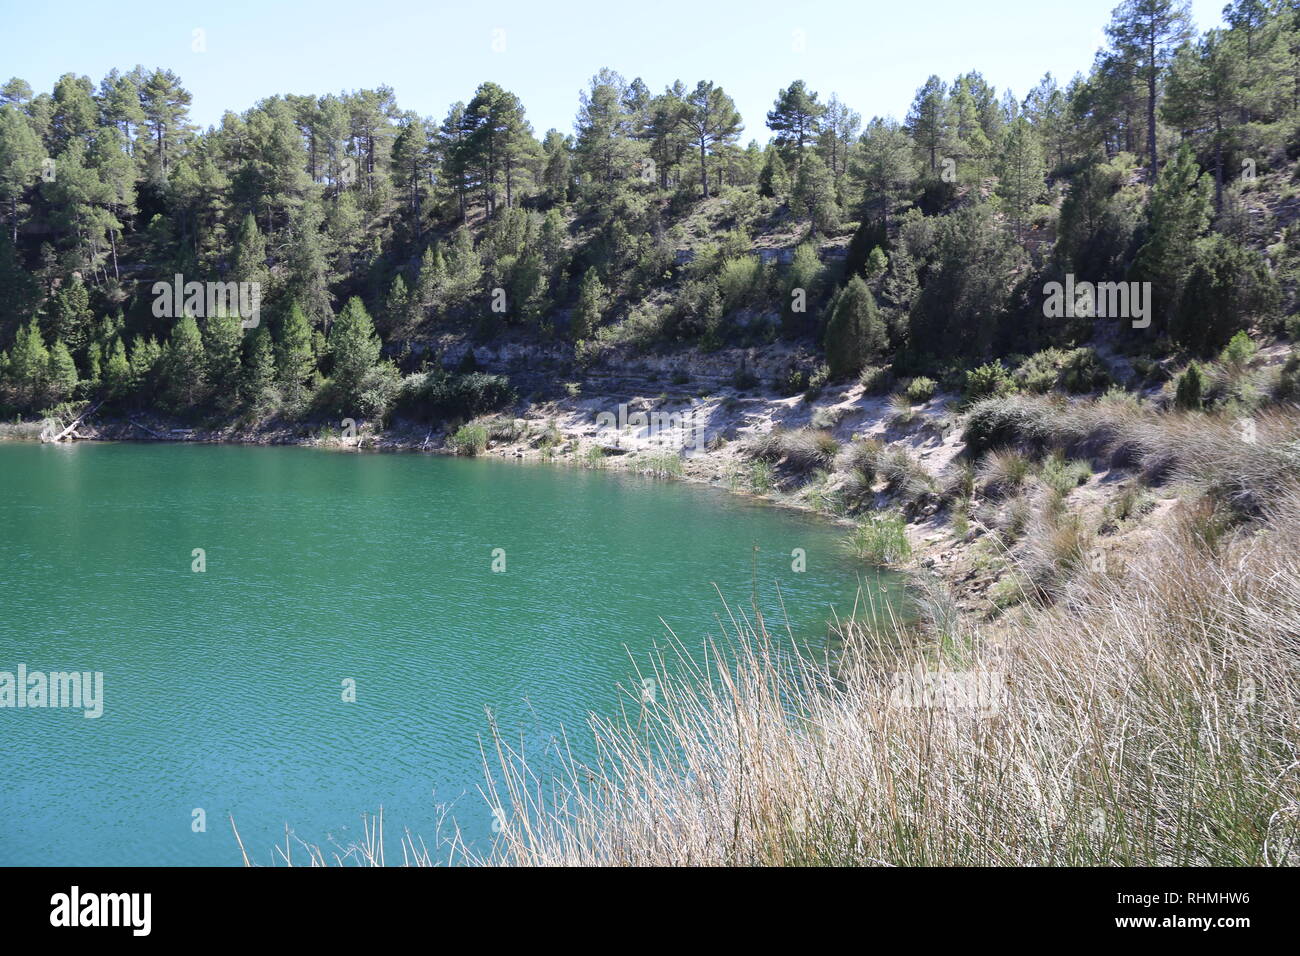 La laguna nel mezzo dell'area forestal in Spagna Foto Stock